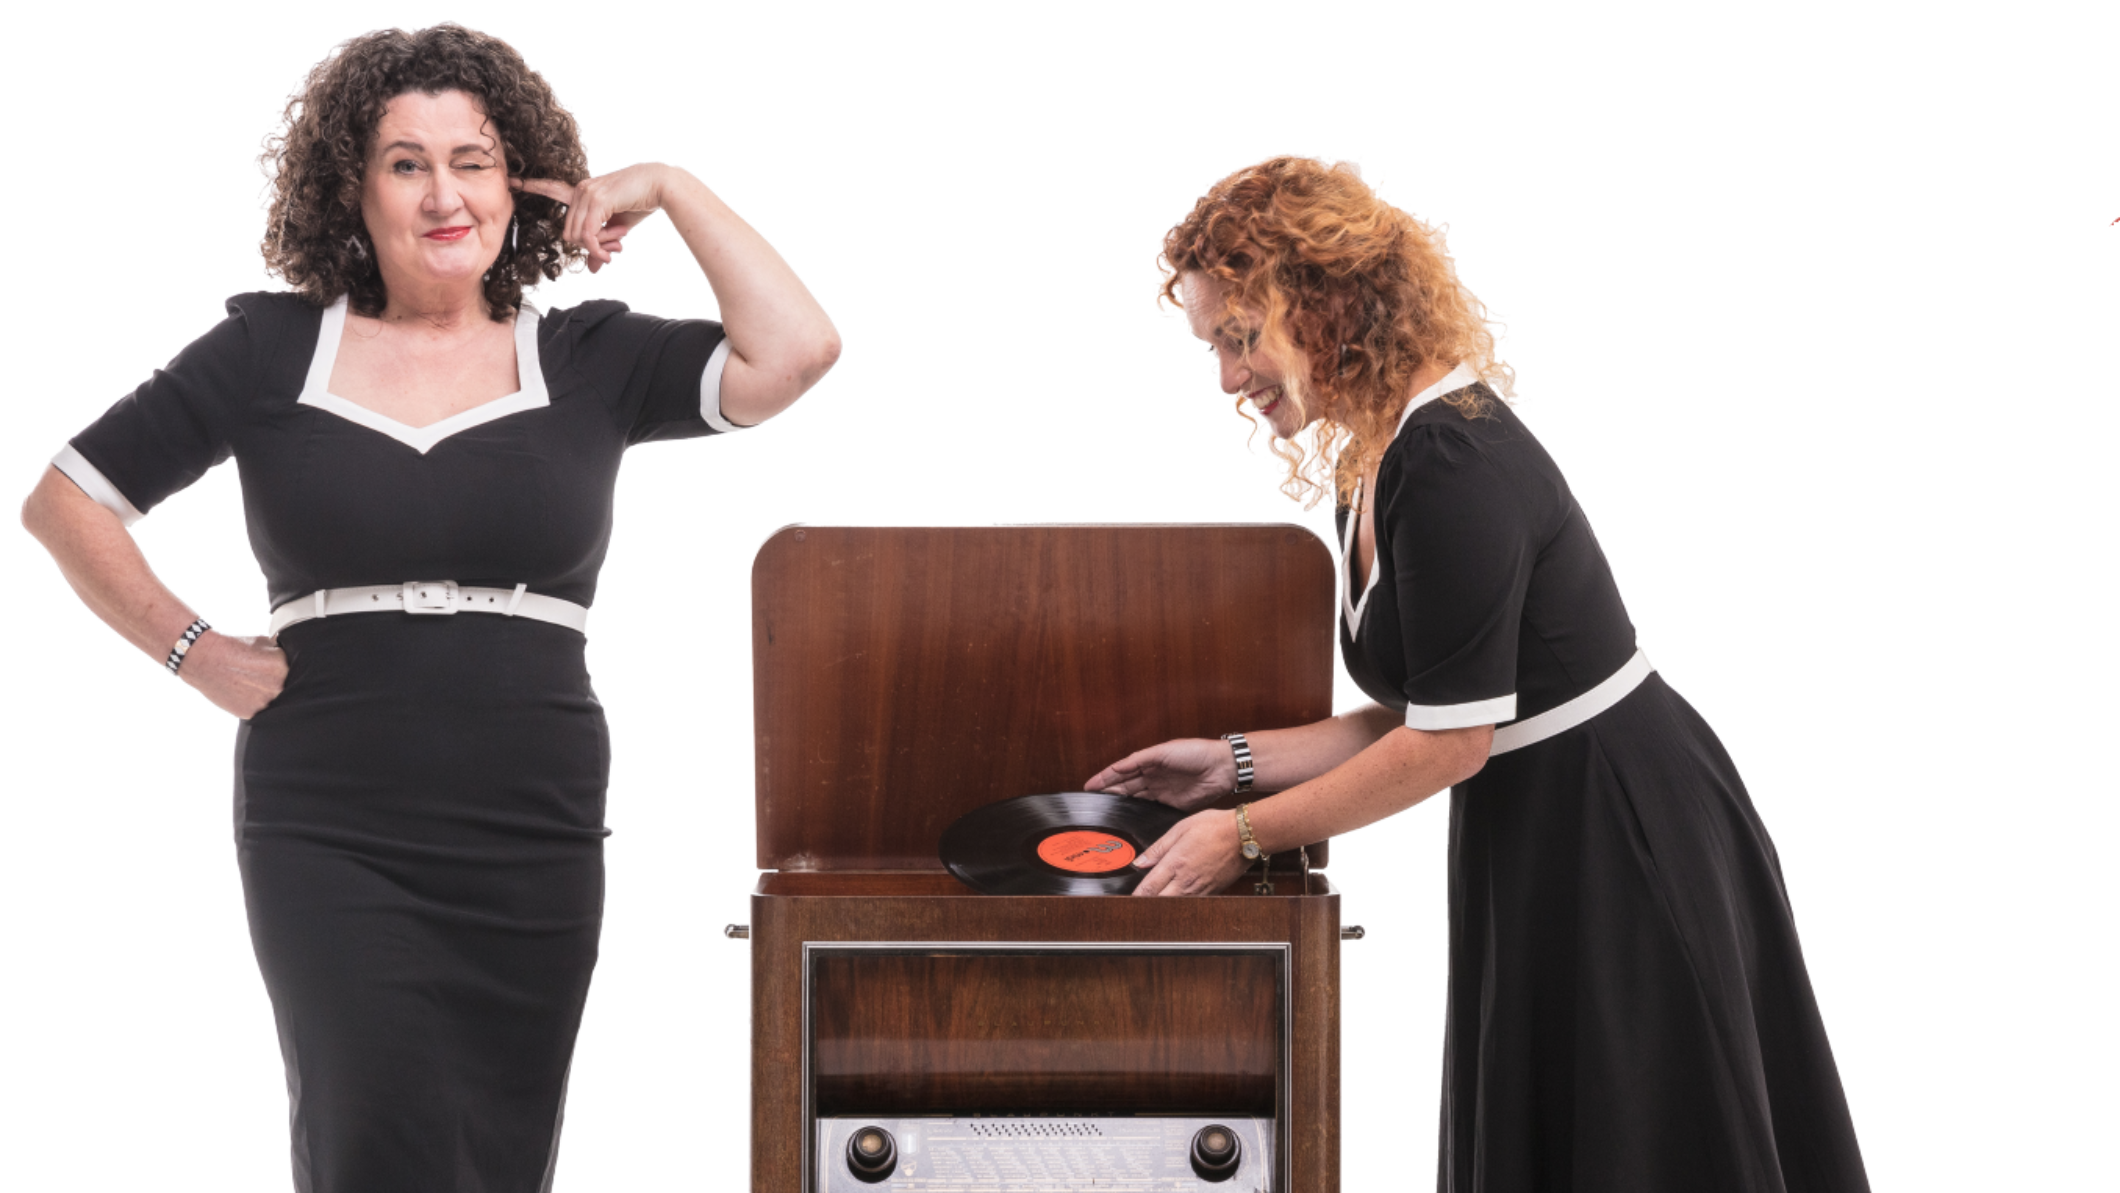 de meisjes van de radio; foto van twee vrouwen in jaren 50 kleding bij een vintage radio